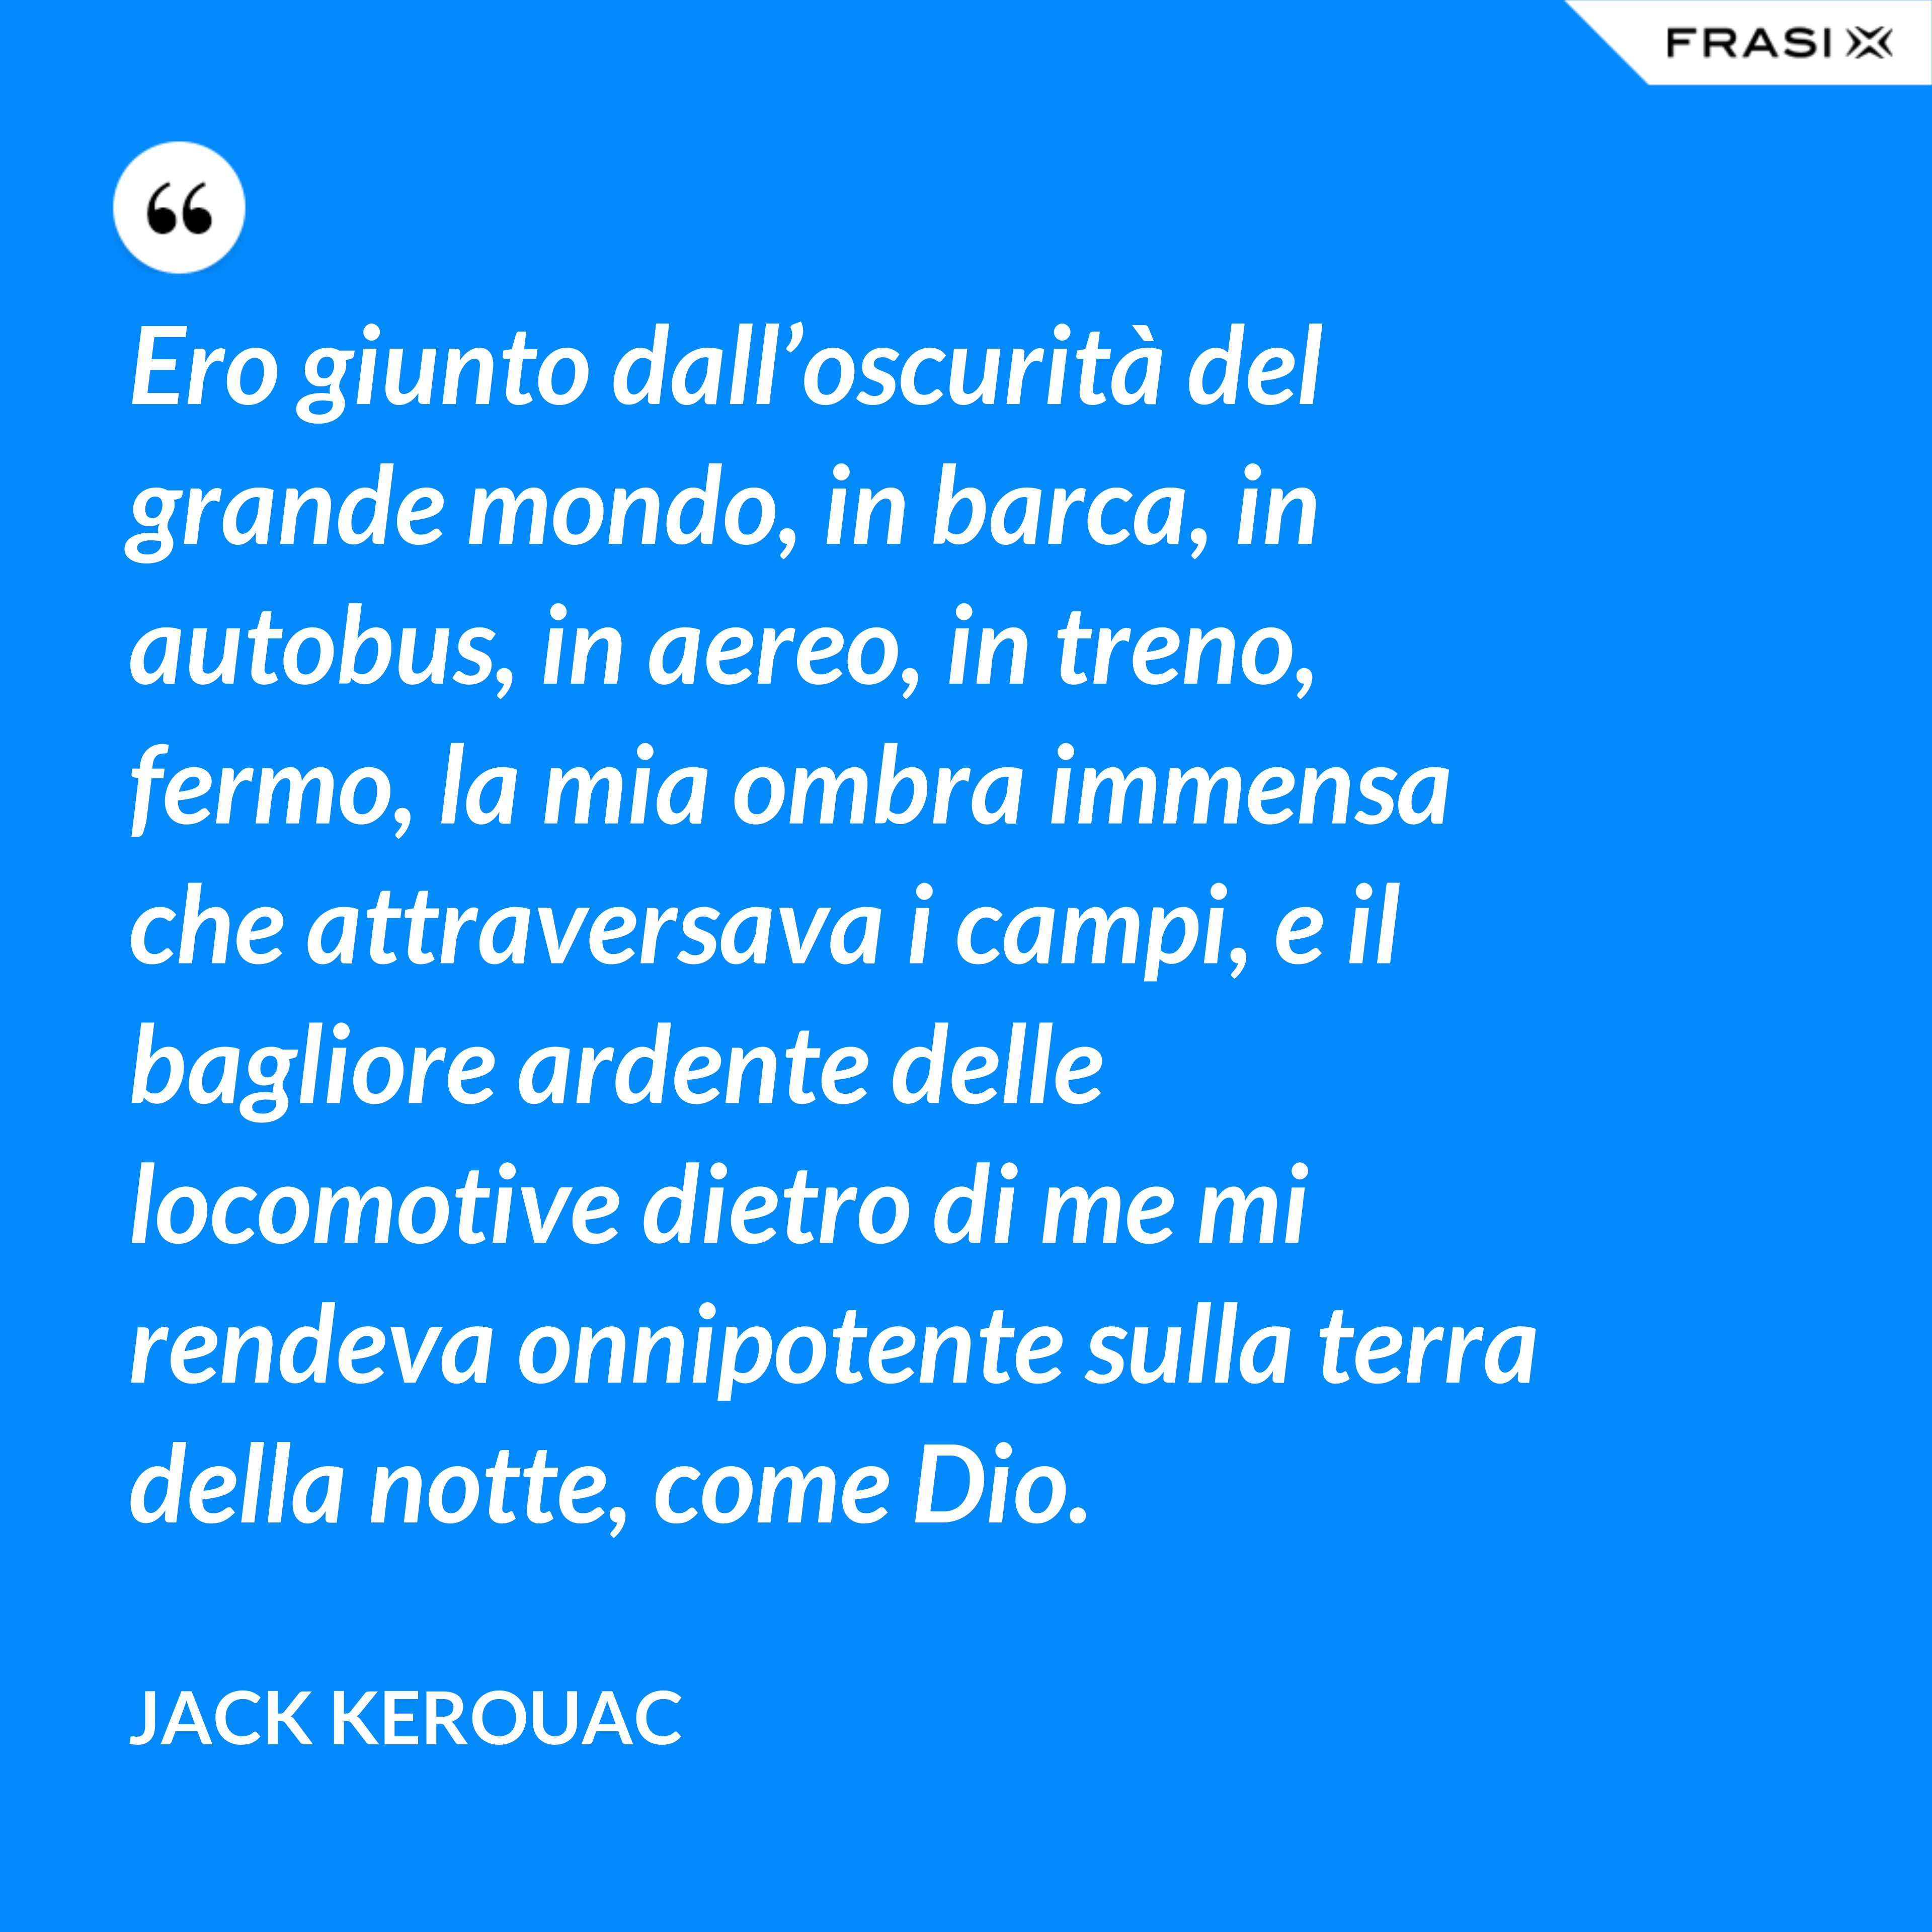 Ero giunto dall’oscurità del grande mondo, in barca, in autobus, in aereo, in treno, fermo, la mia ombra immensa che attraversava i campi, e il bagliore ardente delle locomotive dietro di me mi rendeva onnipotente sulla terra della notte, come Dio. - Jack Kerouac